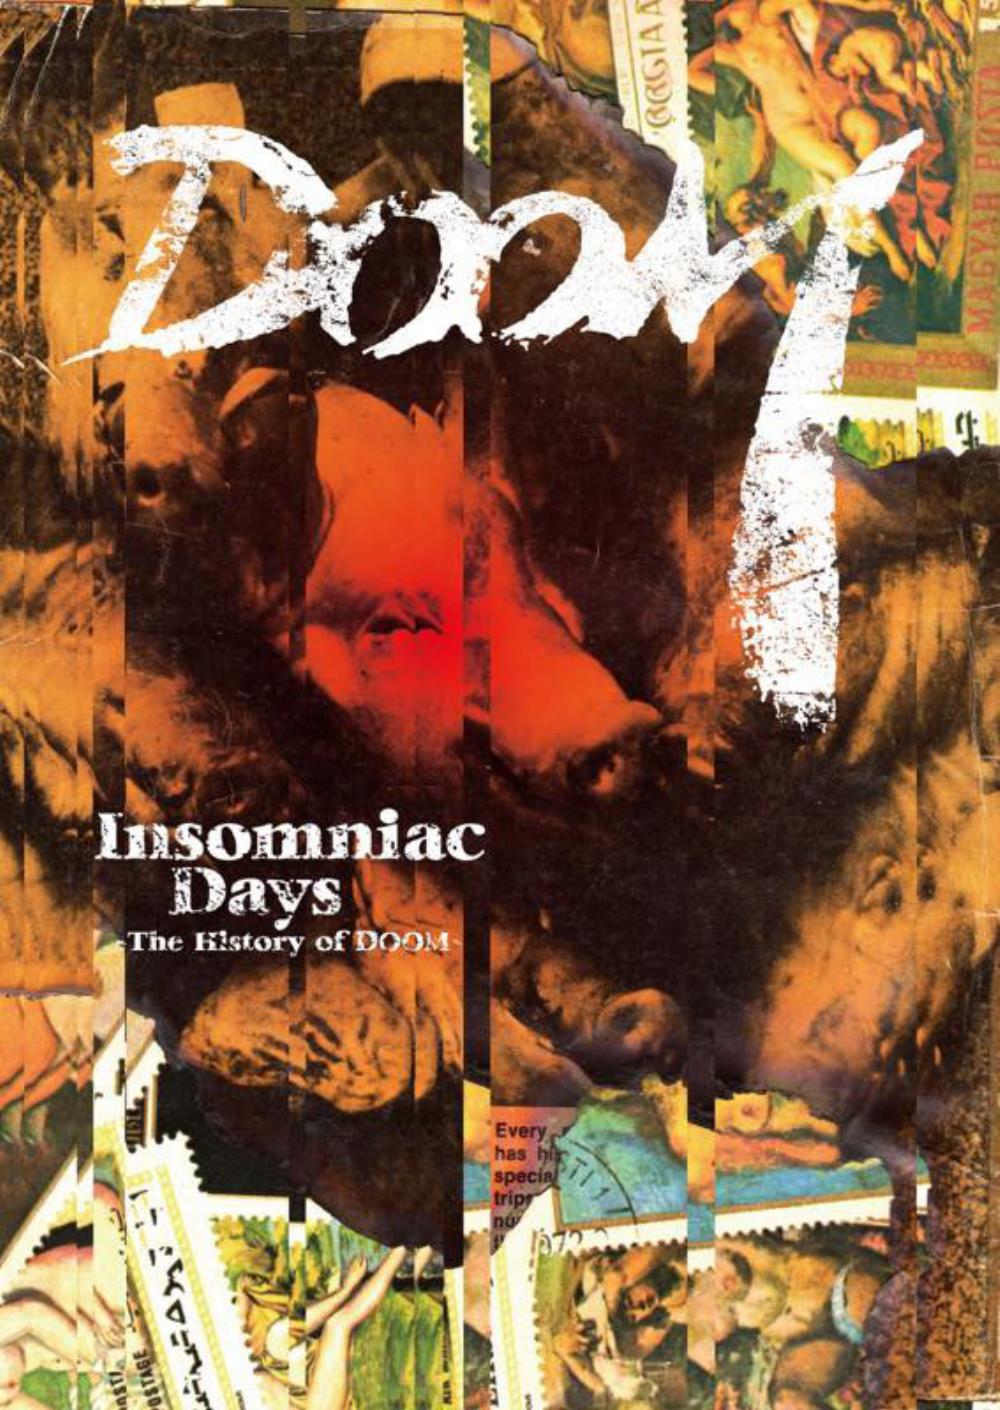 Doom Insomniac Days: The History of Doom album cover